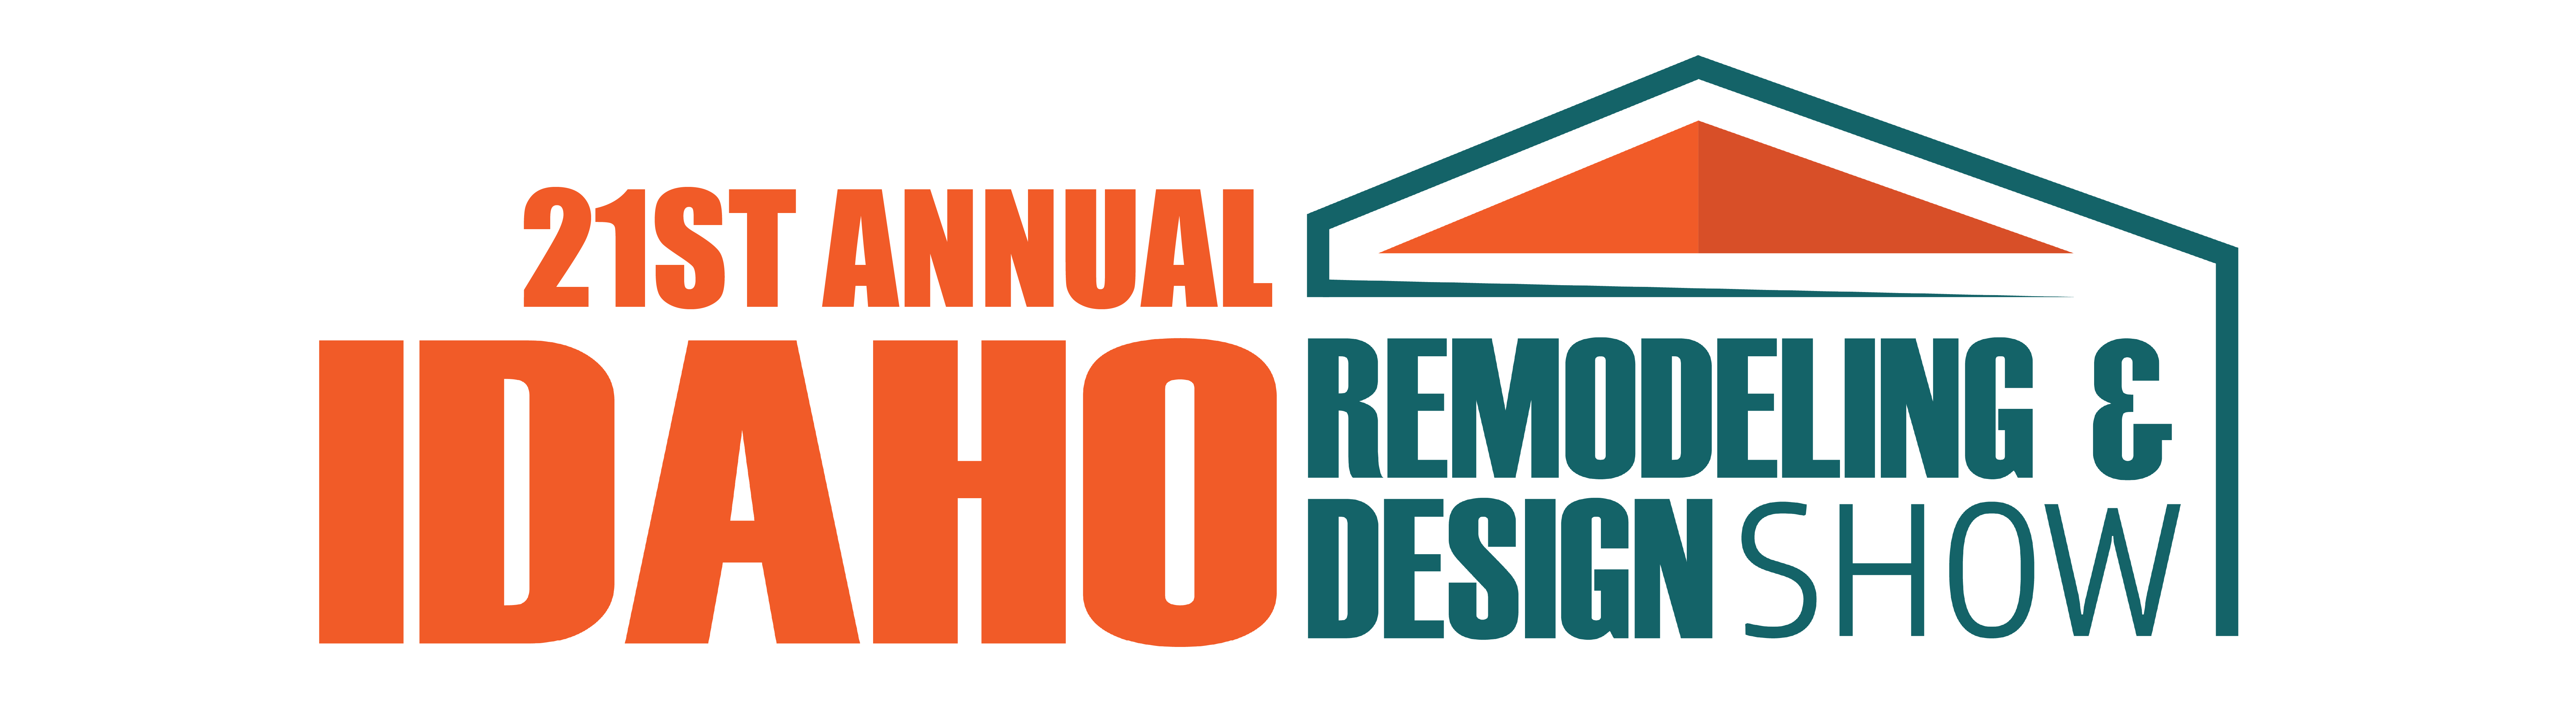 Remodeling & Design website slider